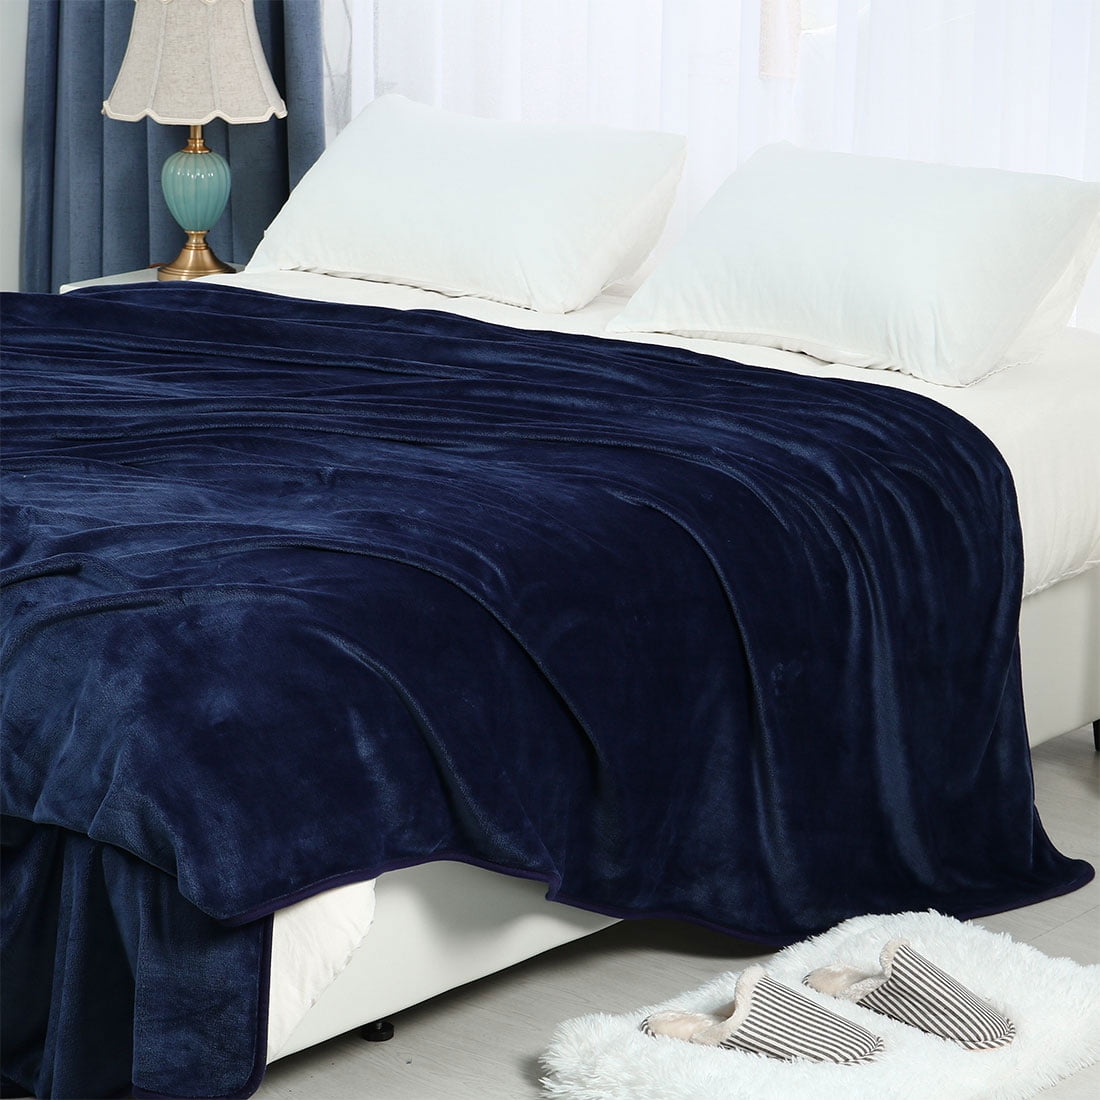 Full Queen King Bed Blanket Navy Blue, Blanket For Queen Size Bed